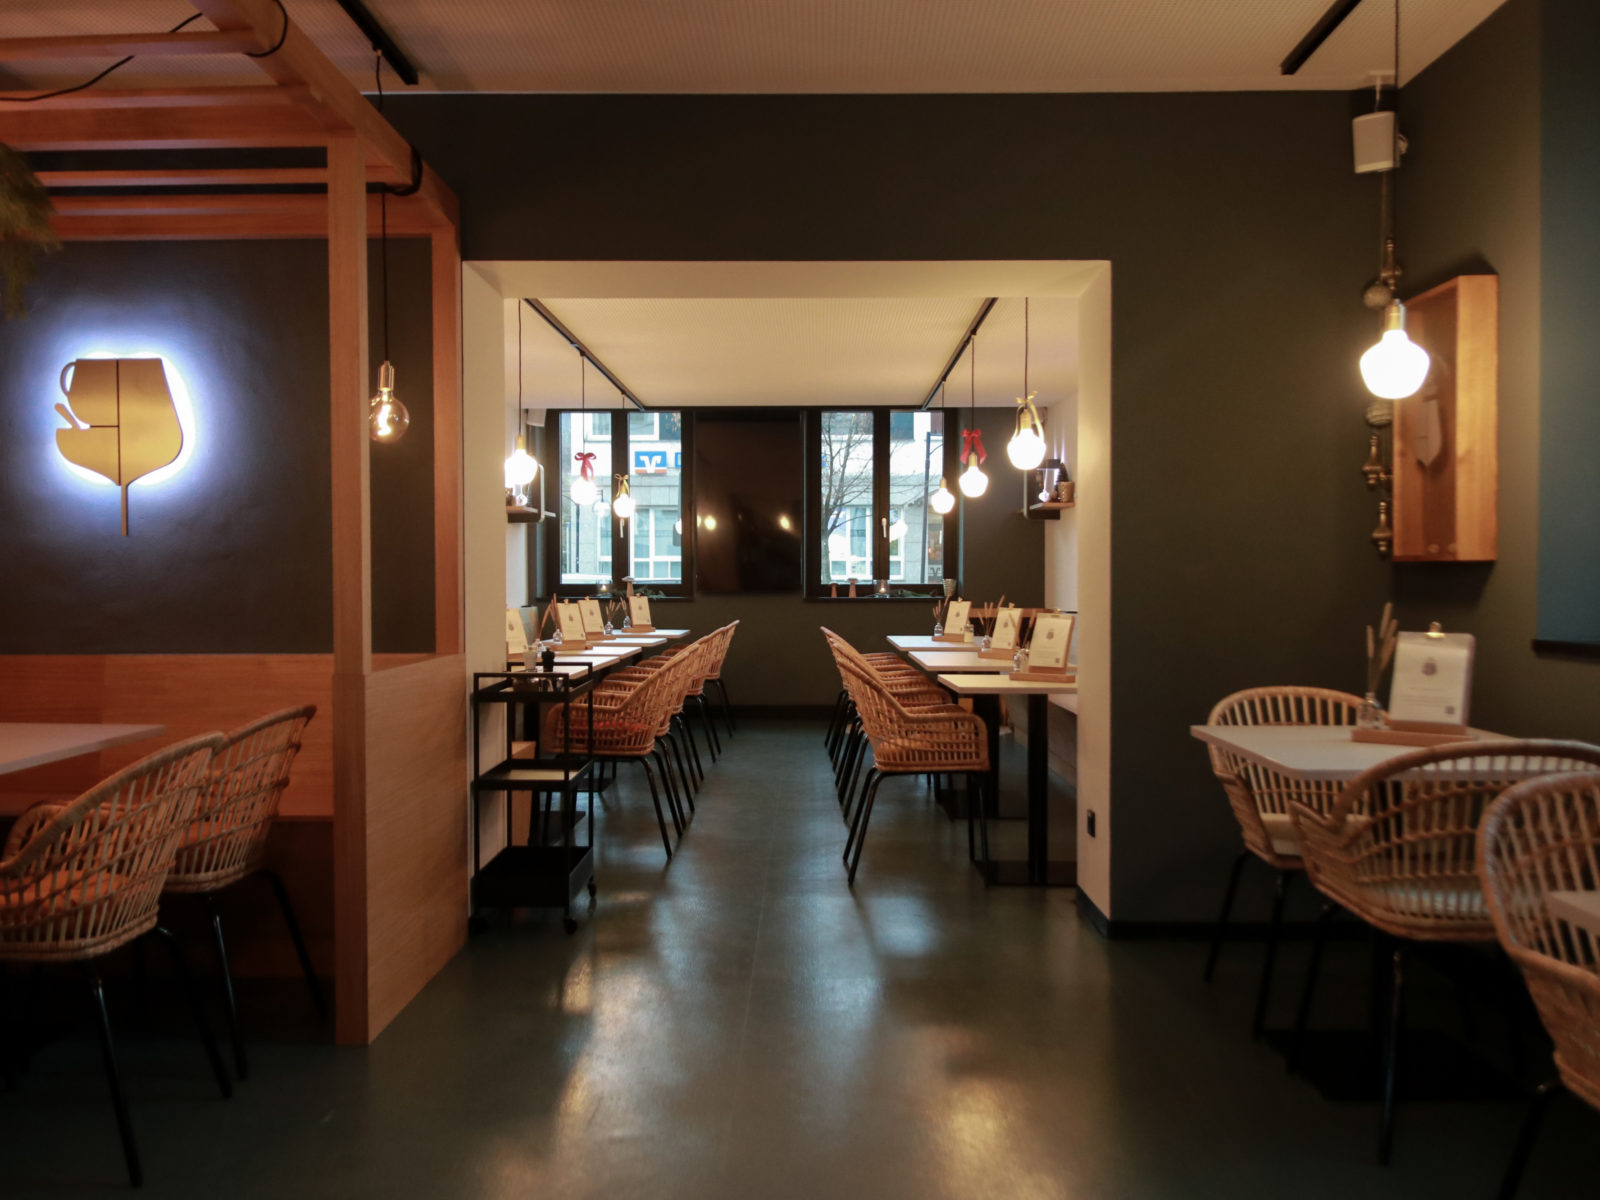 Innengestaltung Cafe, Gesamtansicht, Laube, Sitzbereiche, beleuchtetes Logo